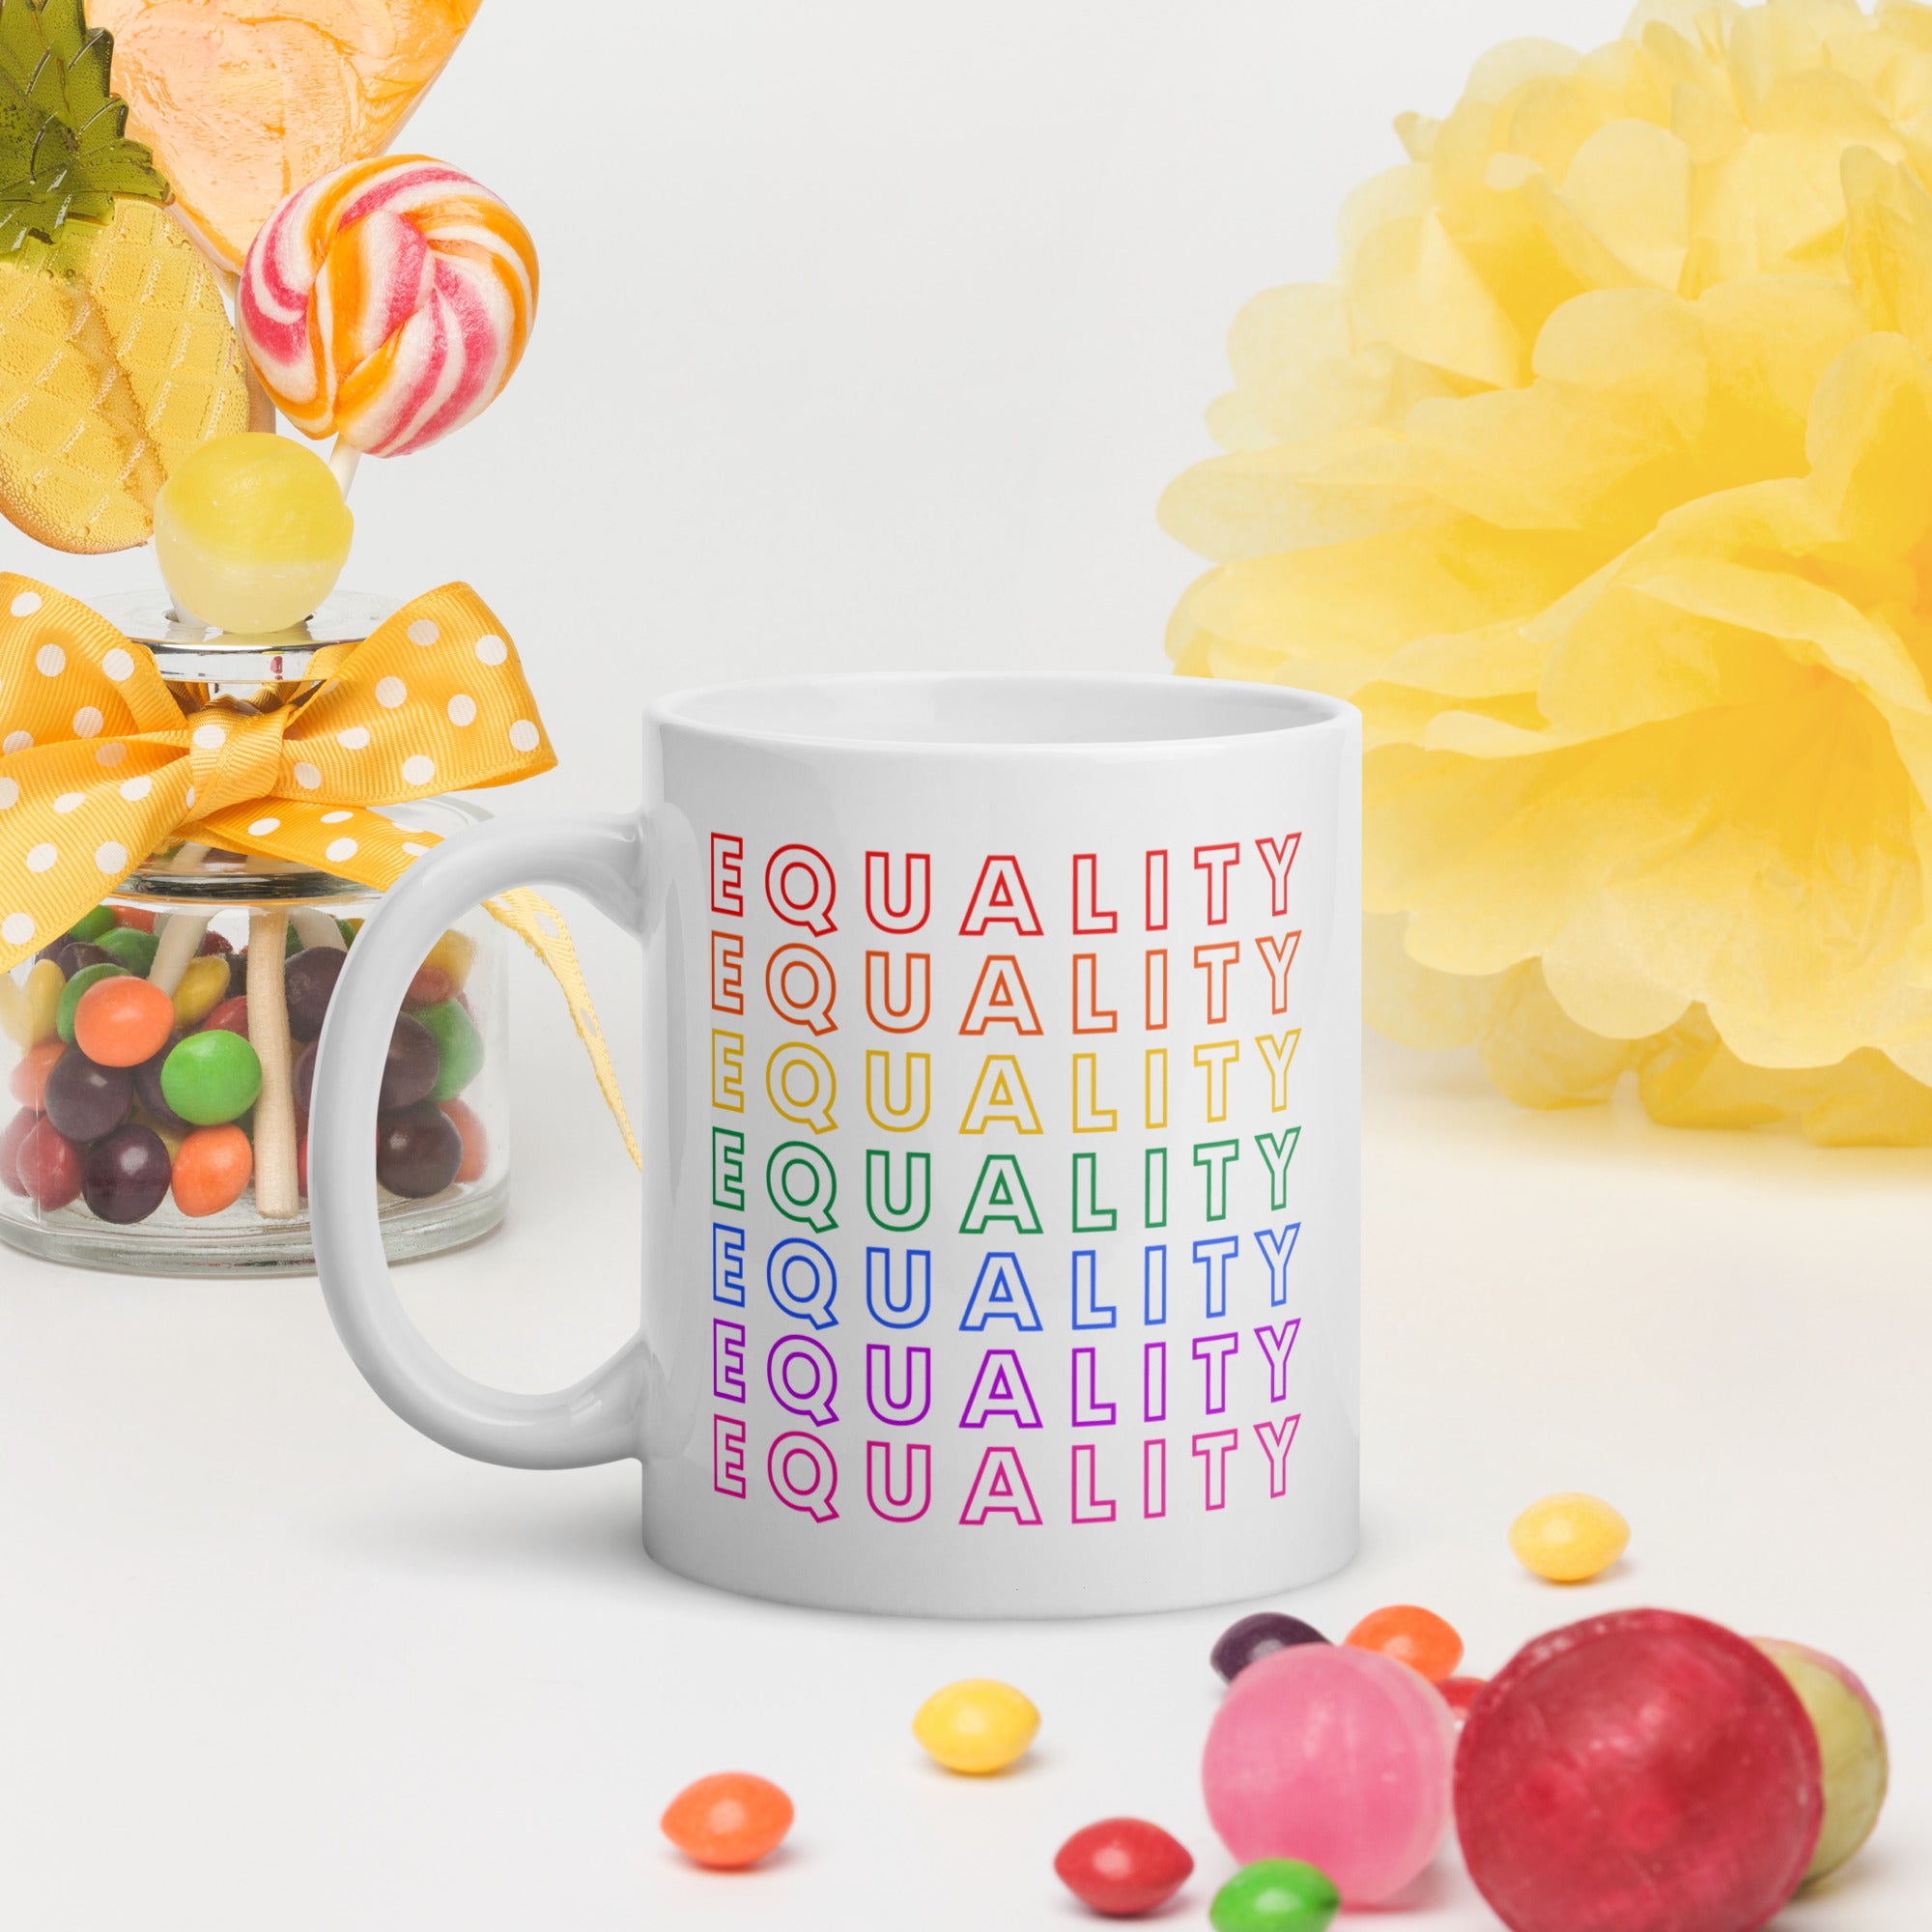 Equality - White Glossy Mug